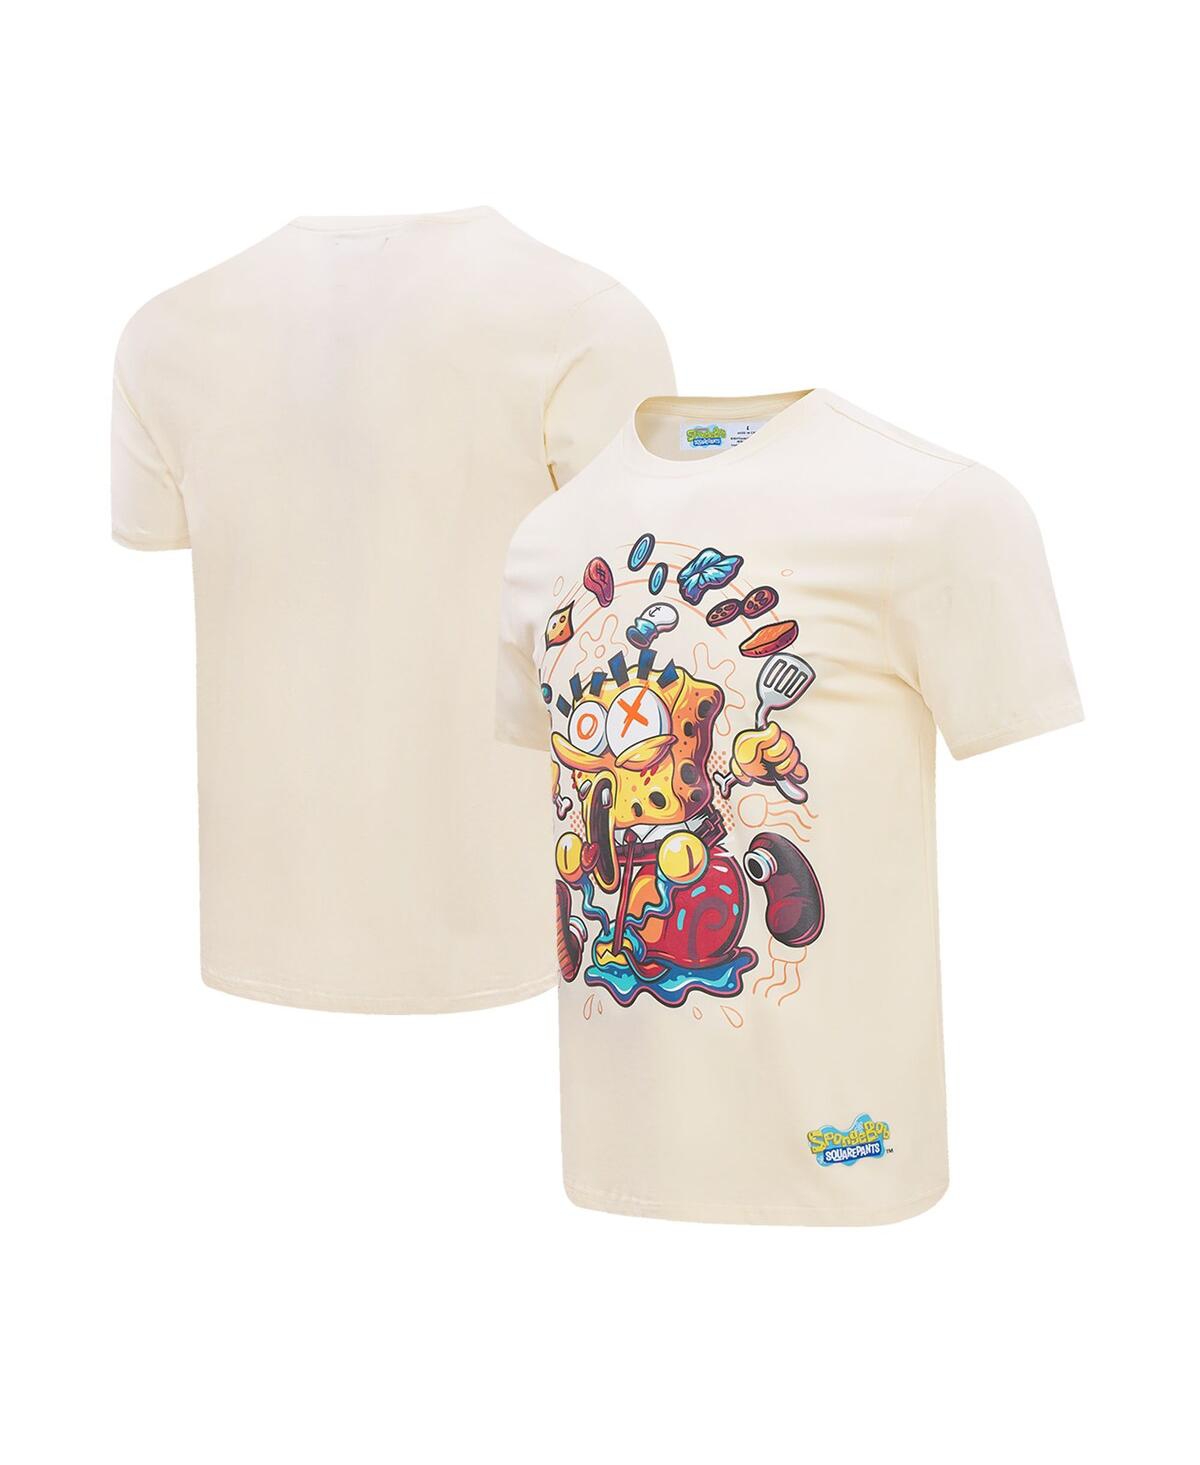 Shop Freeze Max Men's Natural Spongebob Squarepants T-shirt